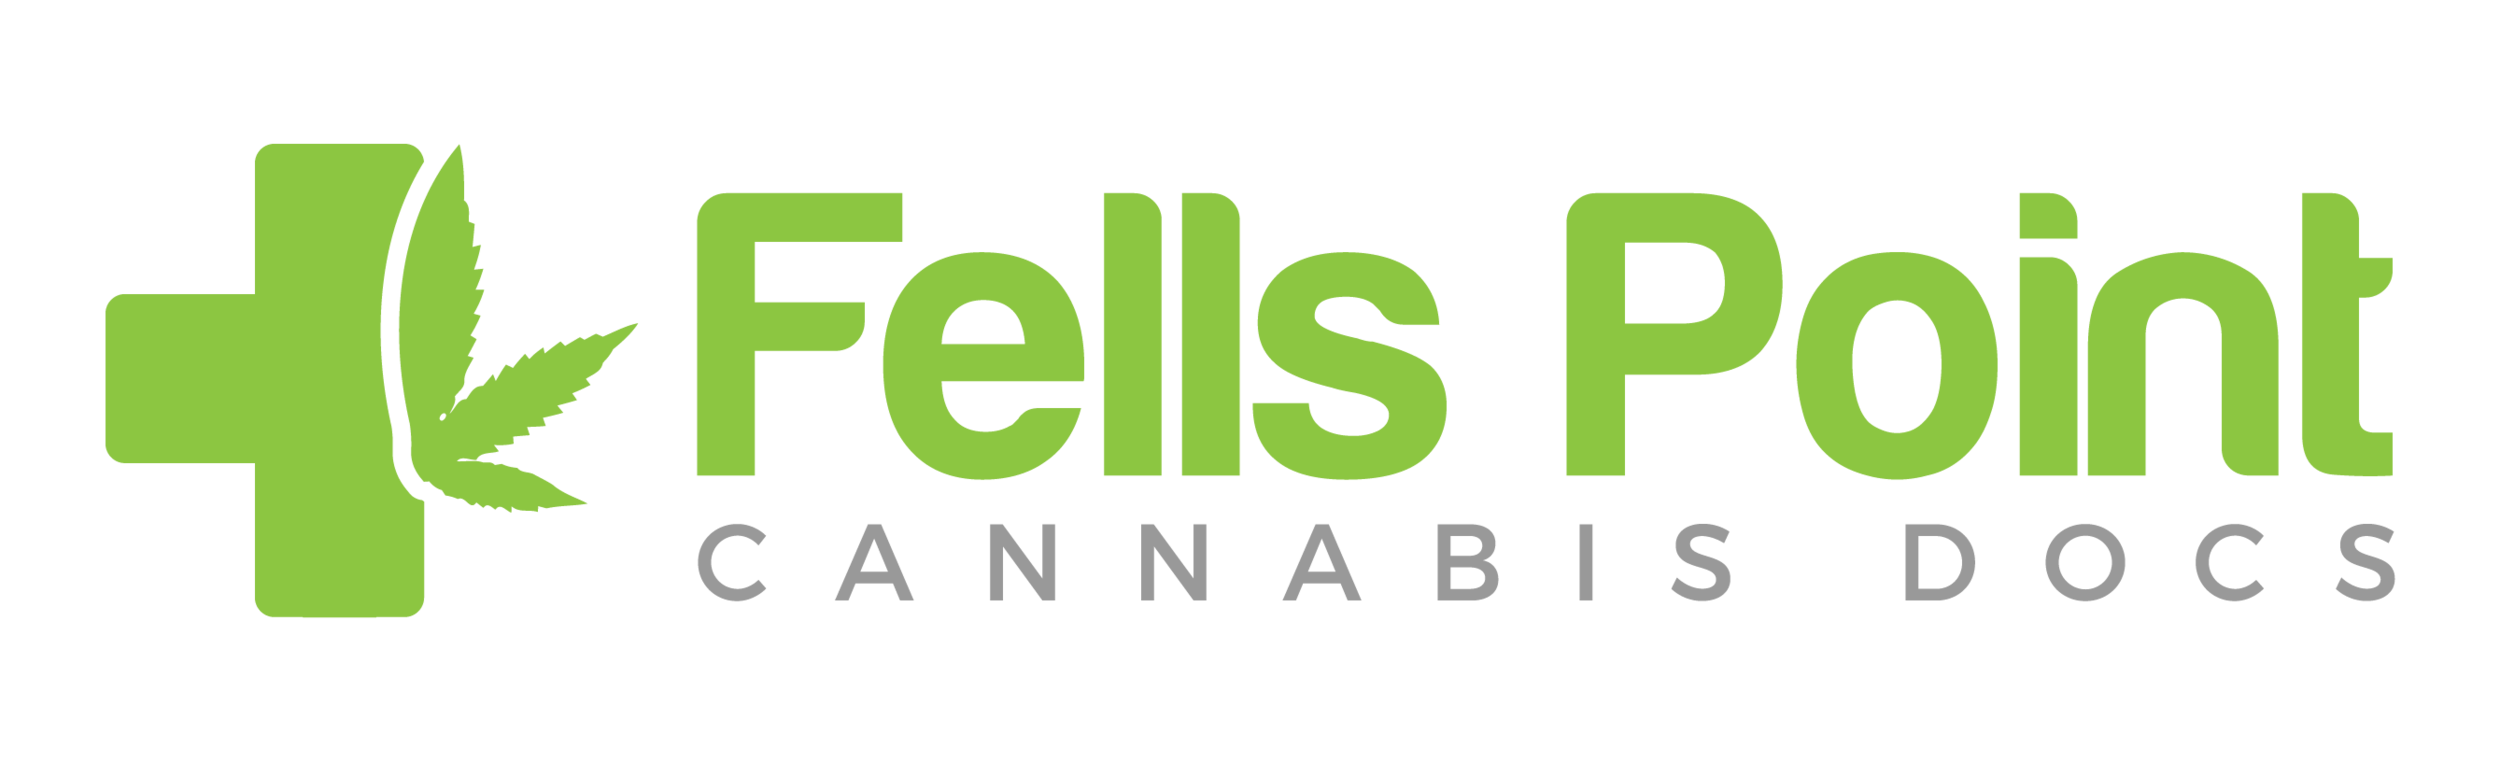 Fells Point Cannabis Docs